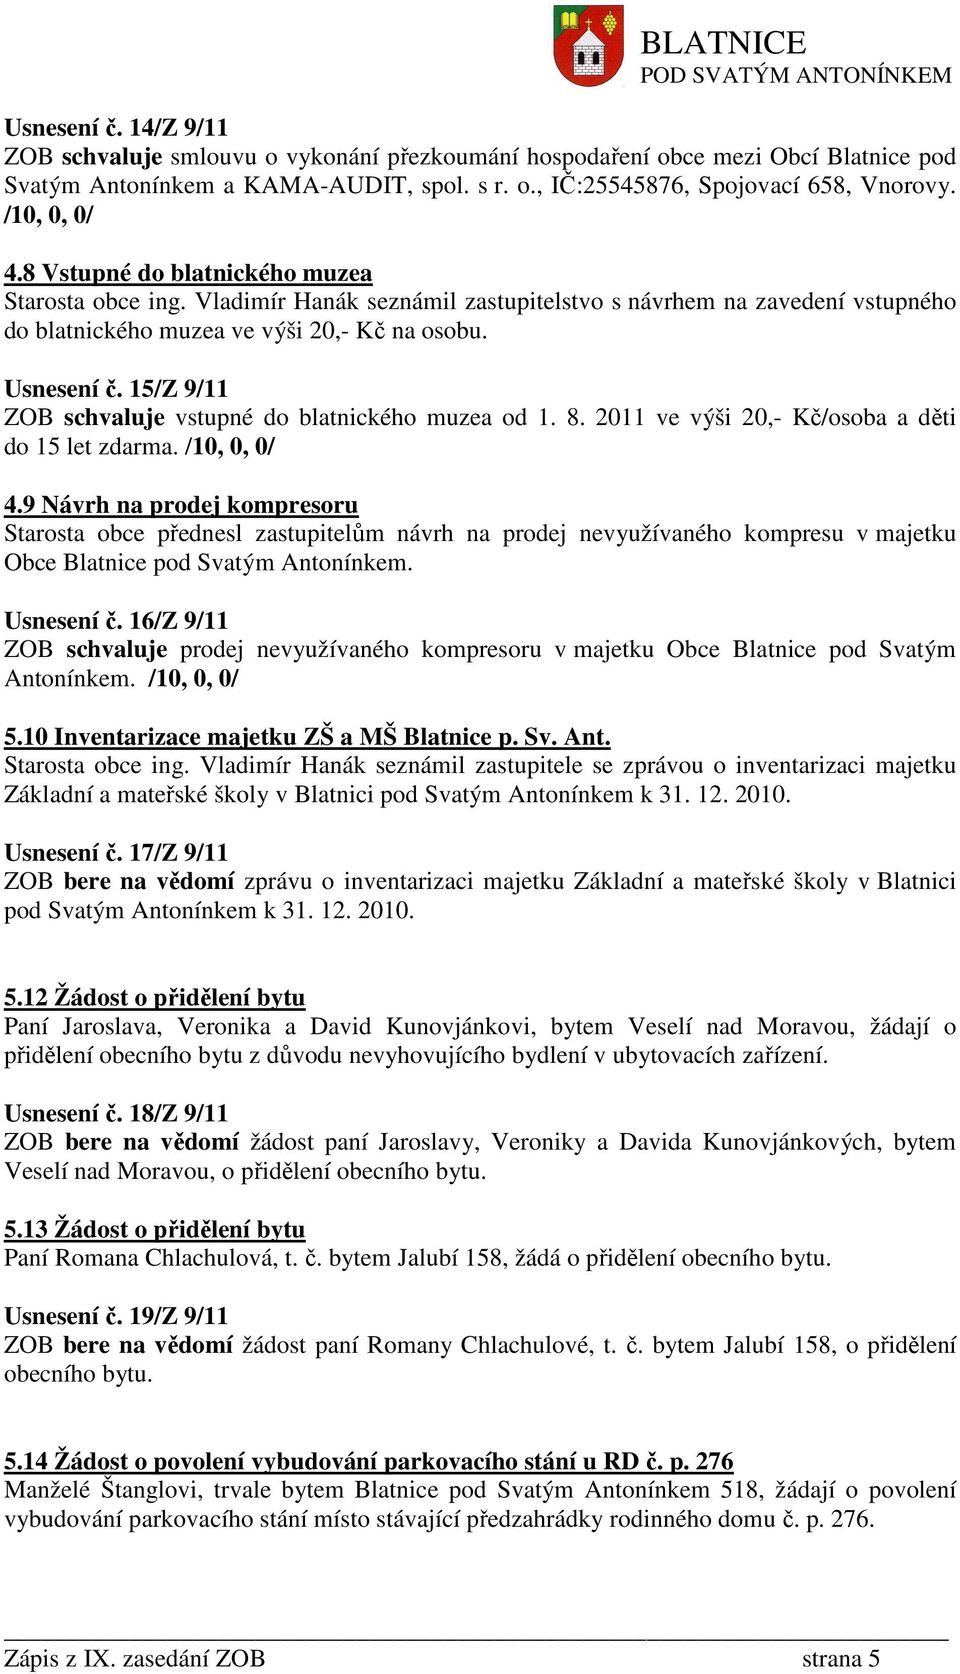 15/Z 9/11 ZOB schvaluje vstupné do blatnického muzea od 1. 8. 2011 ve výši 20,- Kč/osoba a děti do 15 let zdarma. /10, 0, 0/ 4.